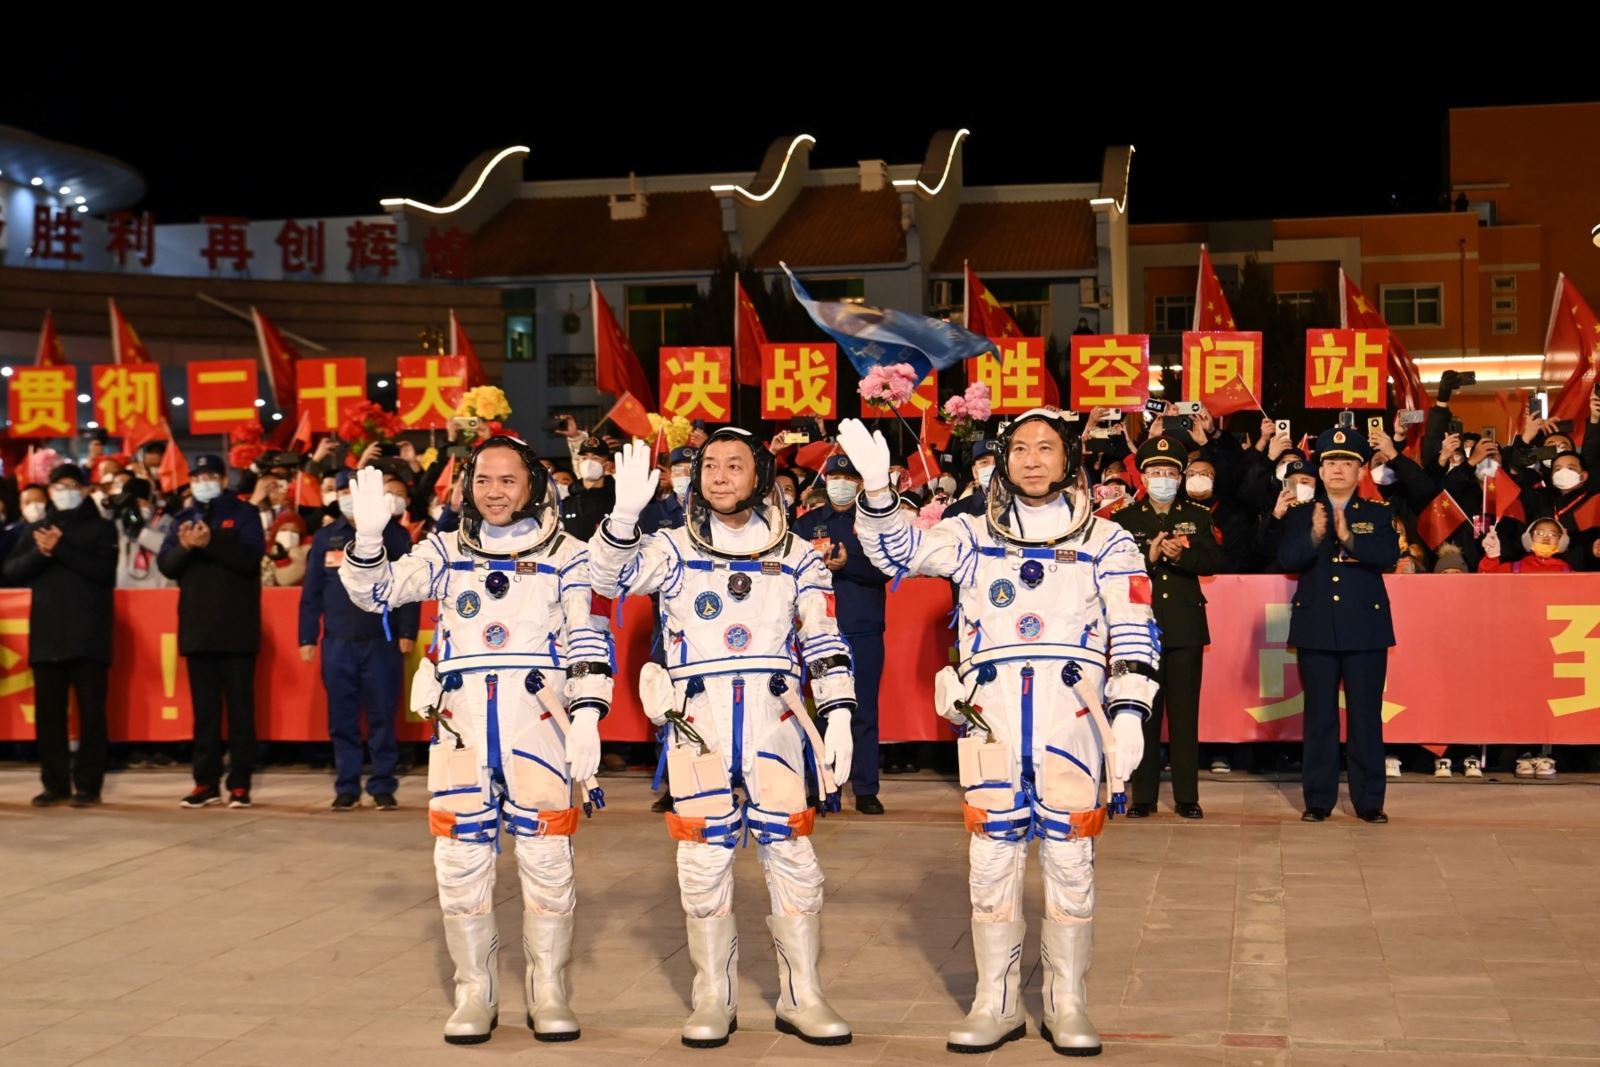 ثلاثة رواد فضاء صينيين يلتحمون بمحطة الفضاء "تيانغونغ"